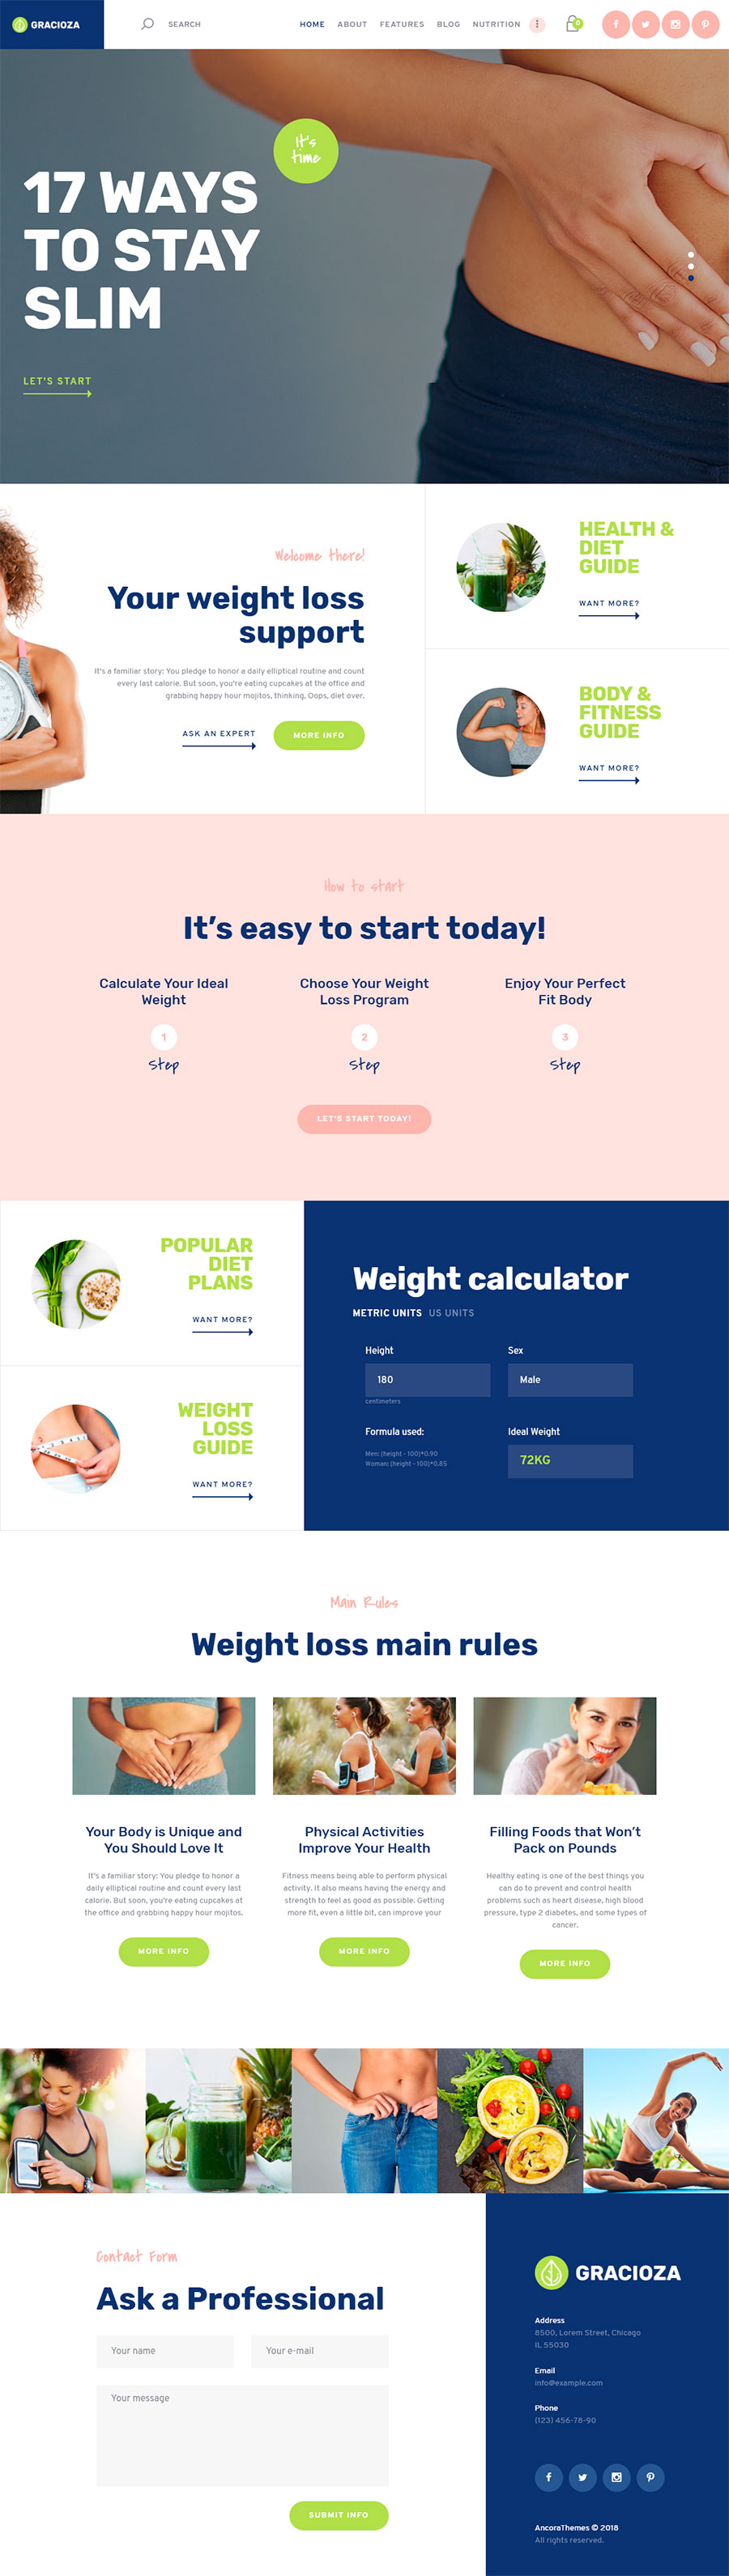 Gracioza | Weight Loss Blog WordPress Theme